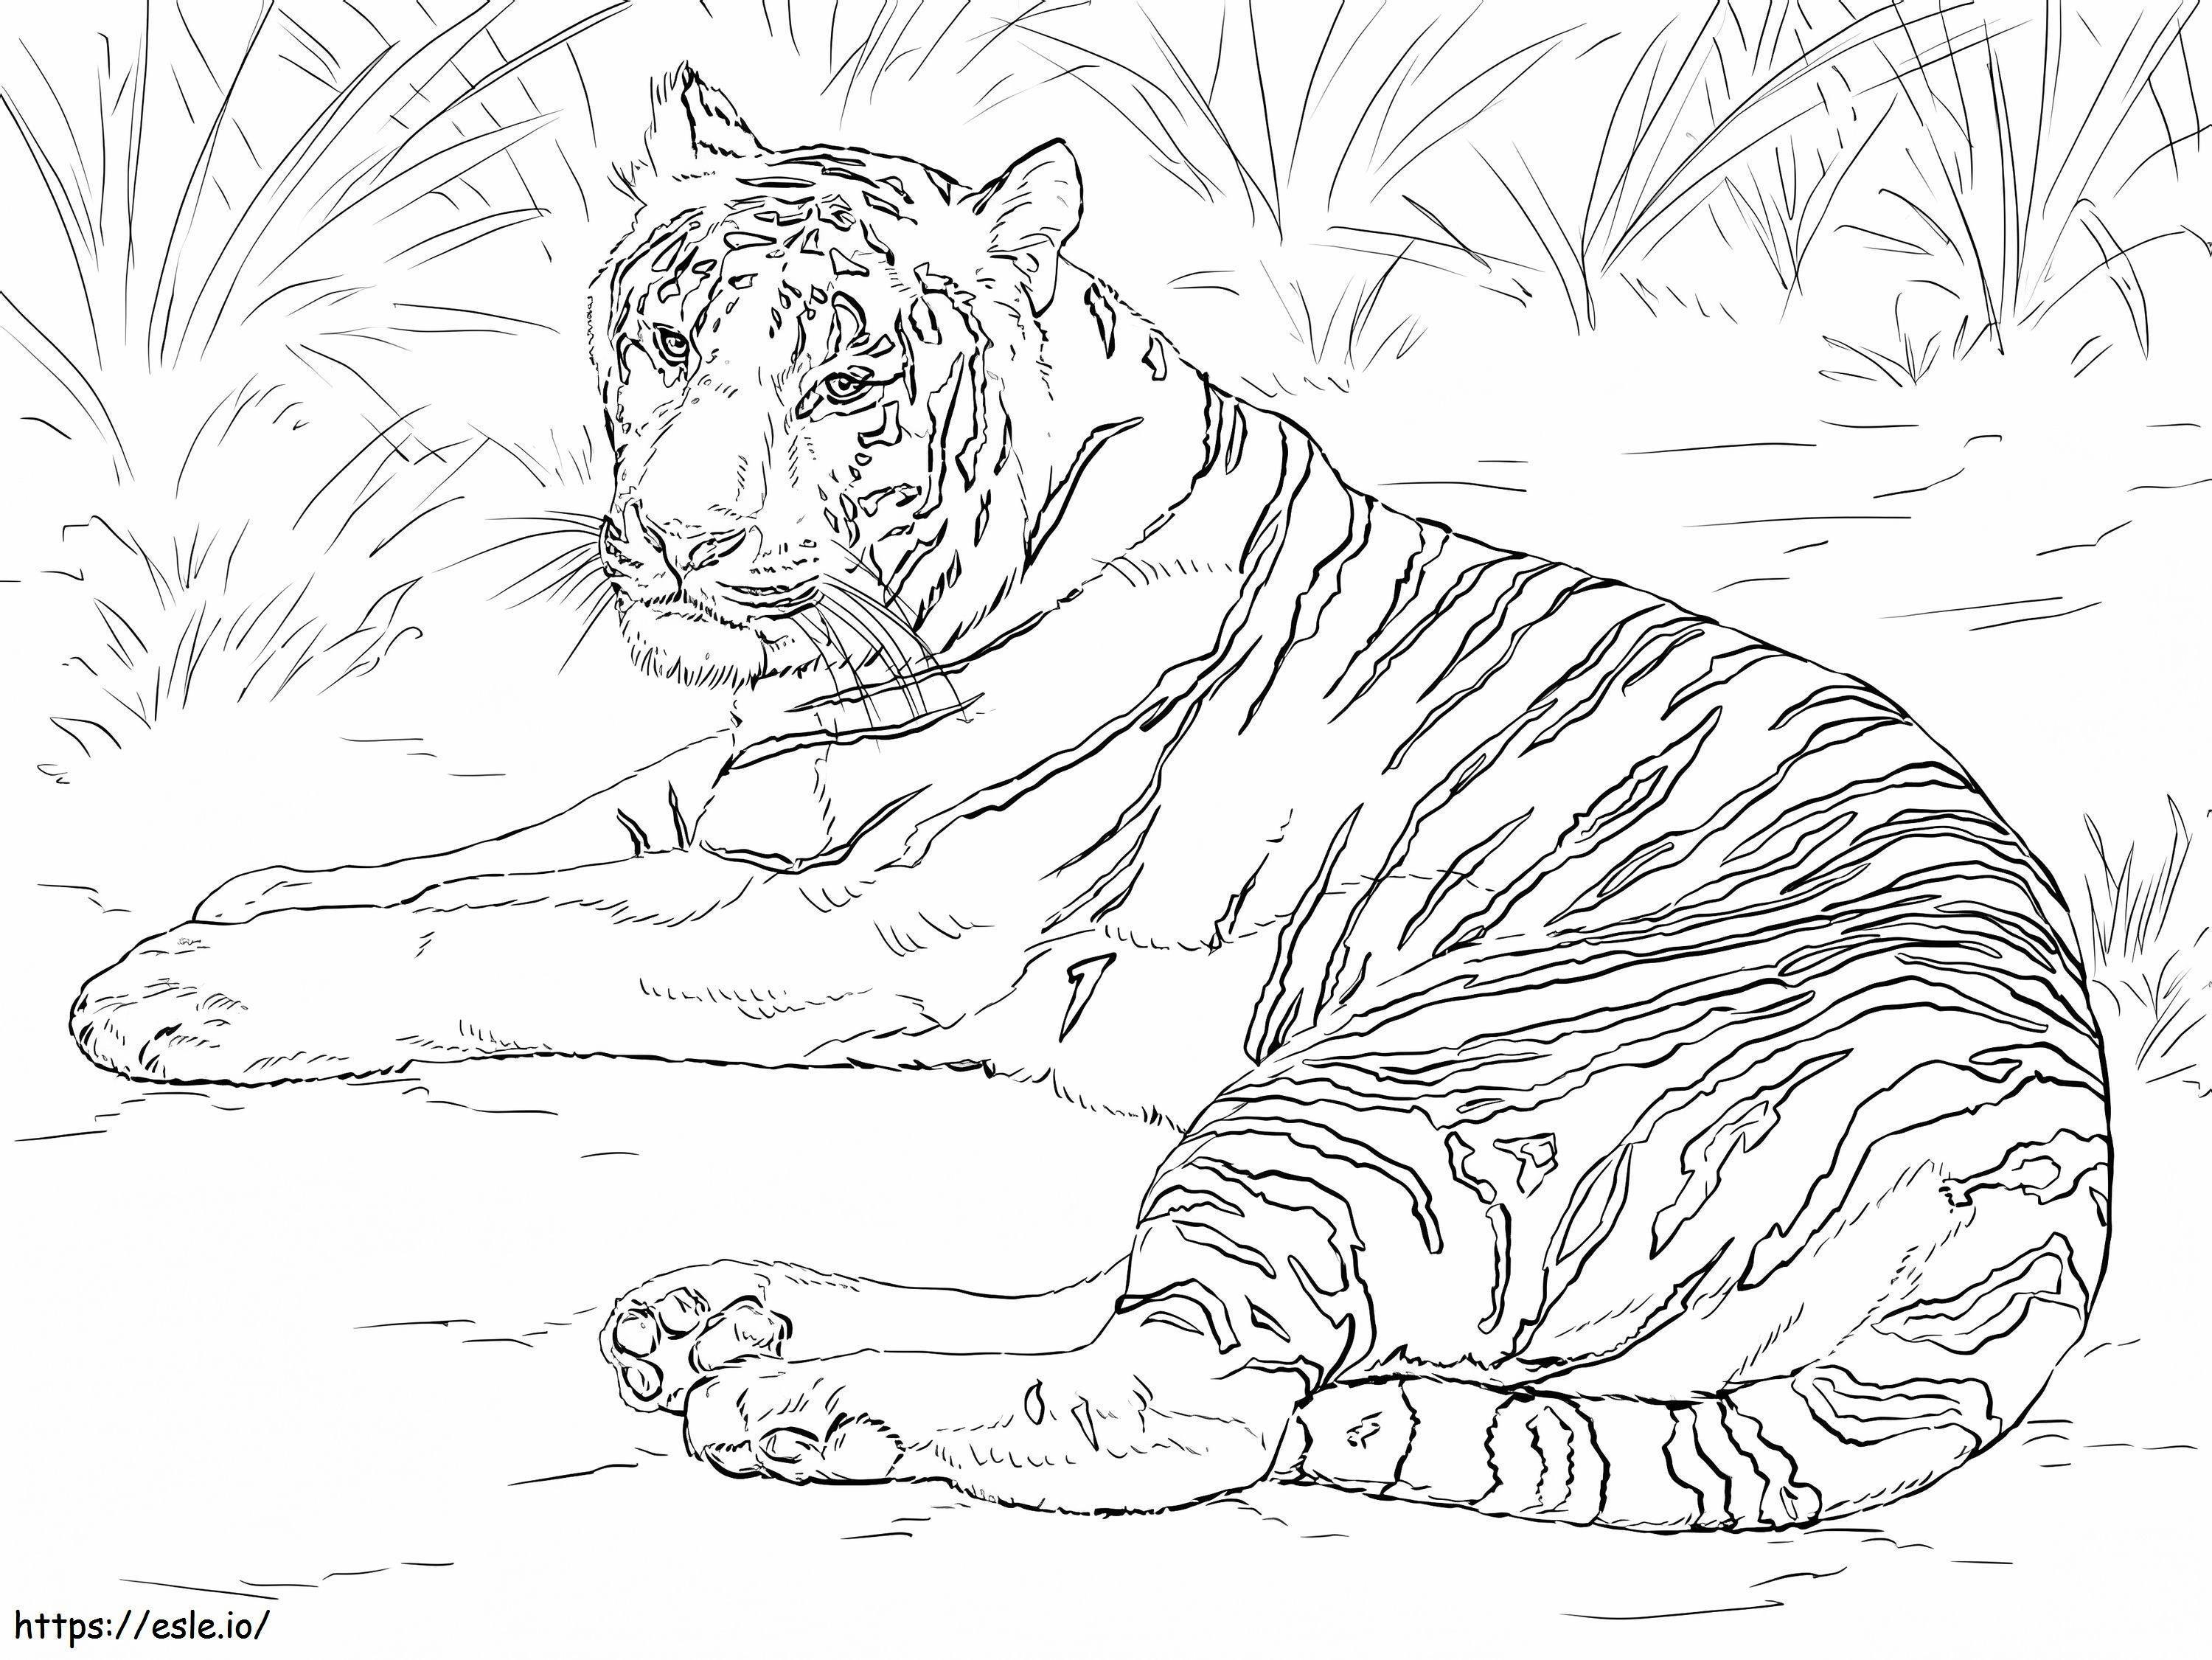 Realistischer Sibirischer Tiger ausmalbilder